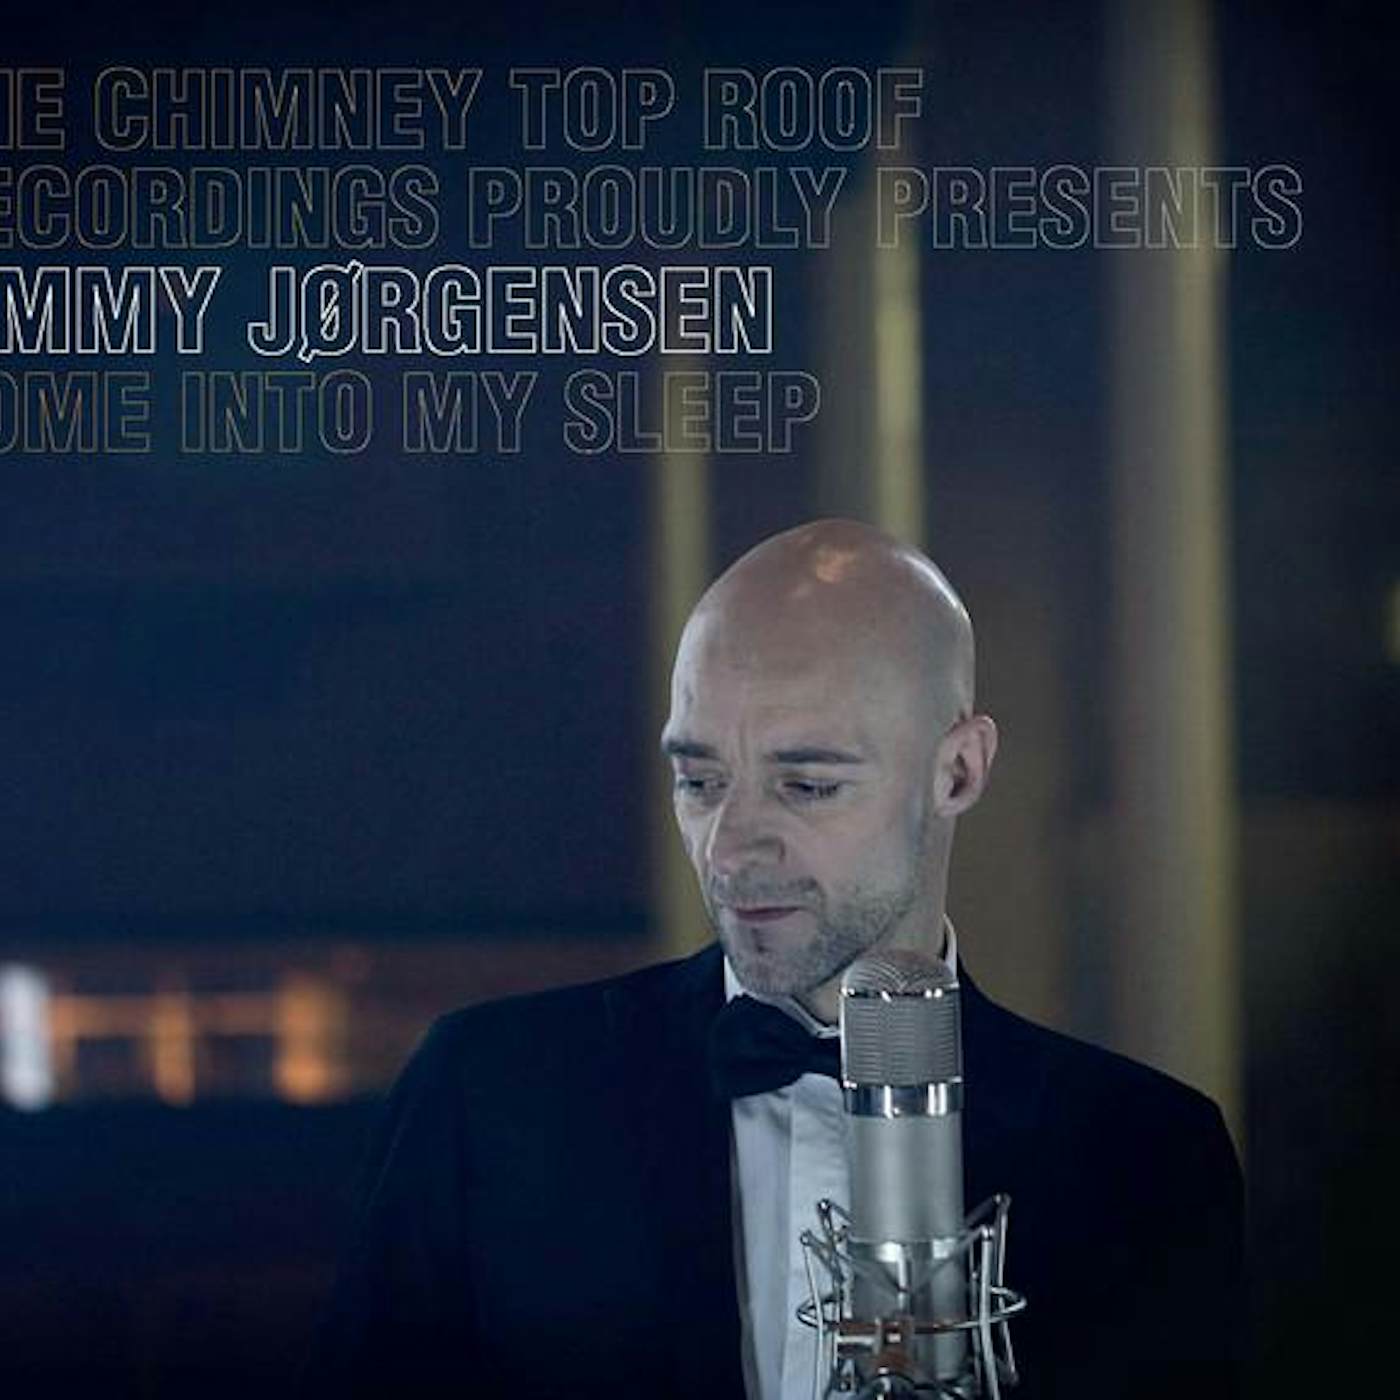 Jimmy Jørgensen